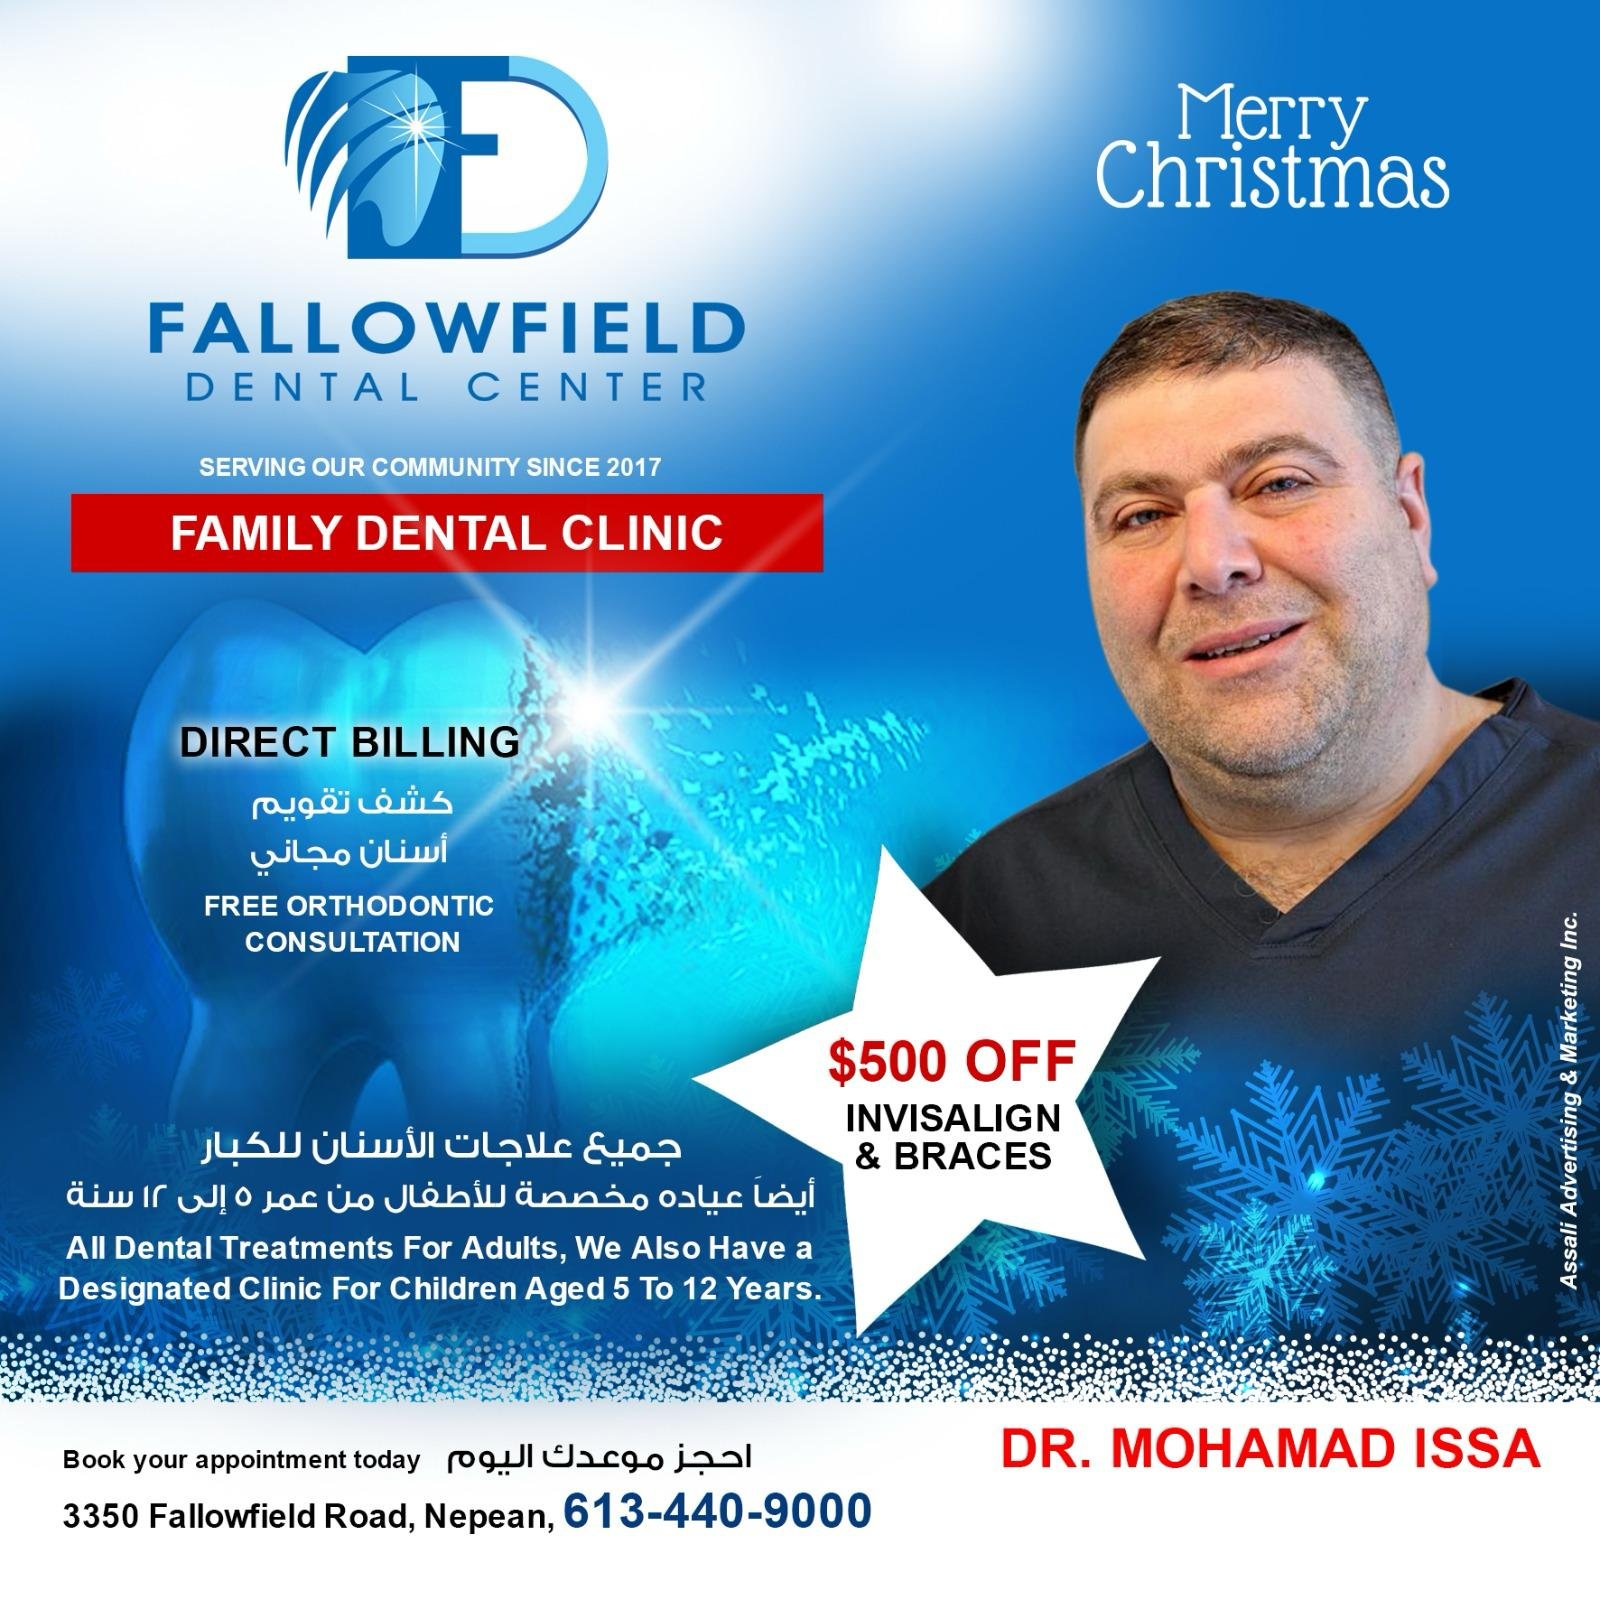 FallowField Dental Center